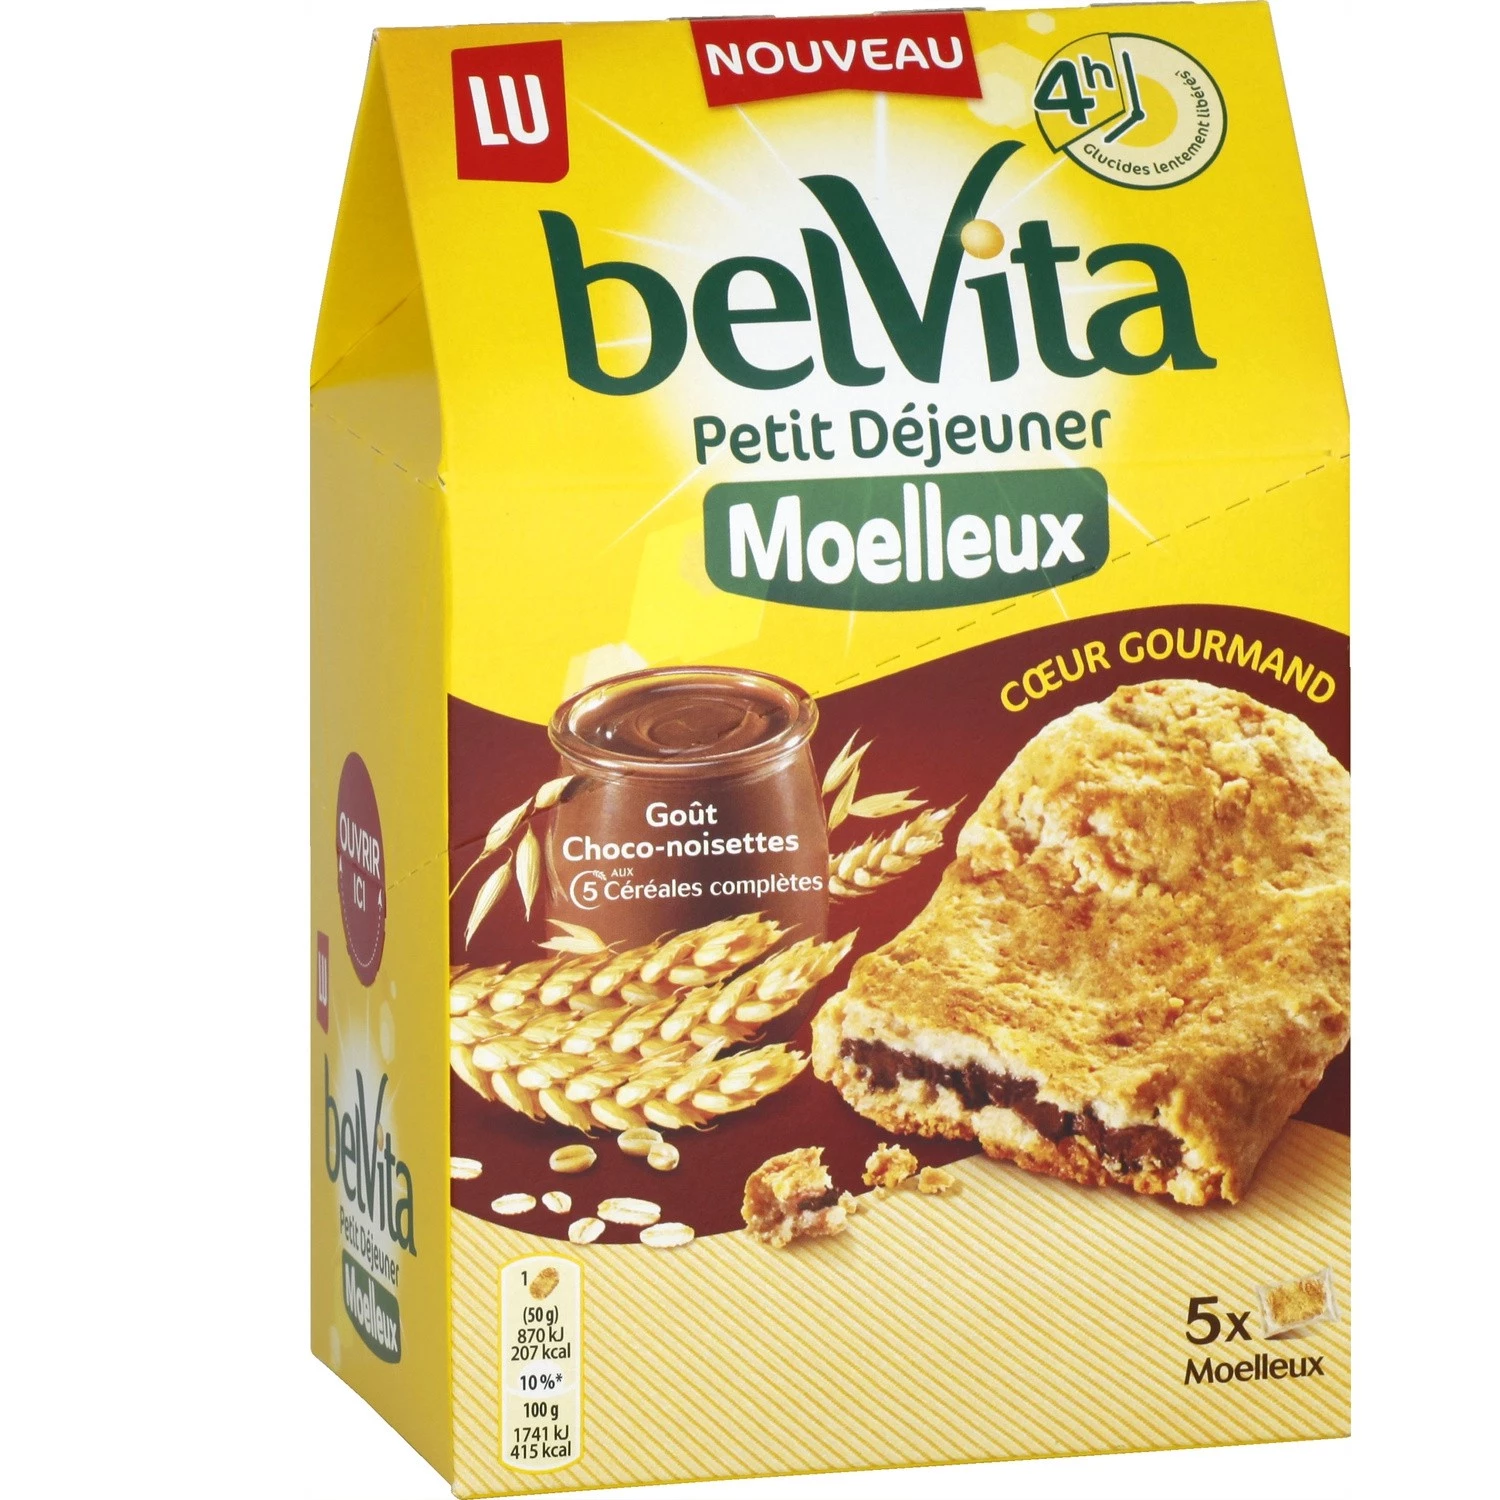 Chocolate hazelnut breakfast biscuits 250g - BELVITA